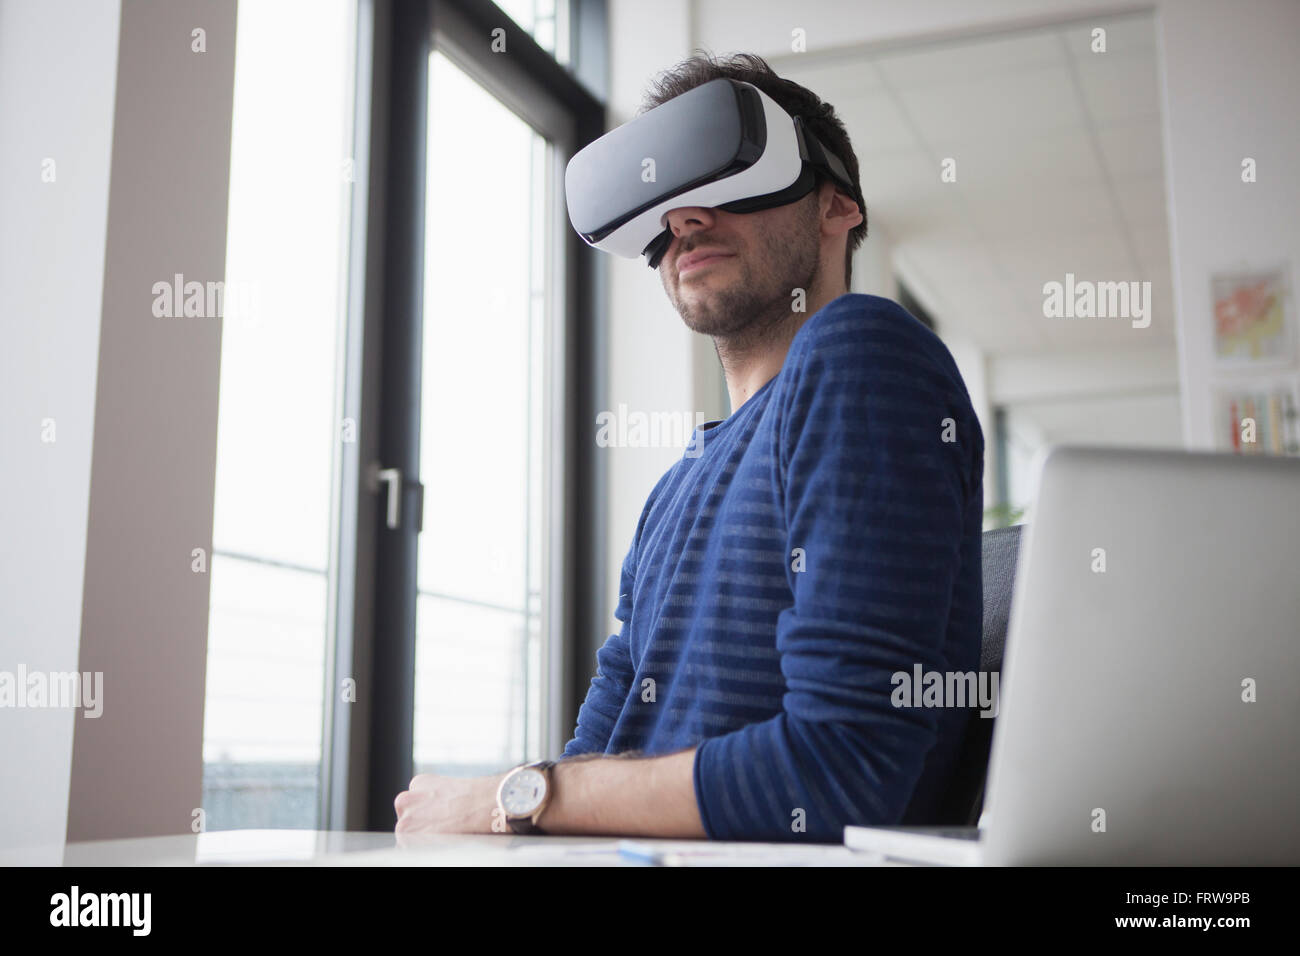 Smiling homme portant des lunettes de réalité virtuelle dans le bureau Banque D'Images